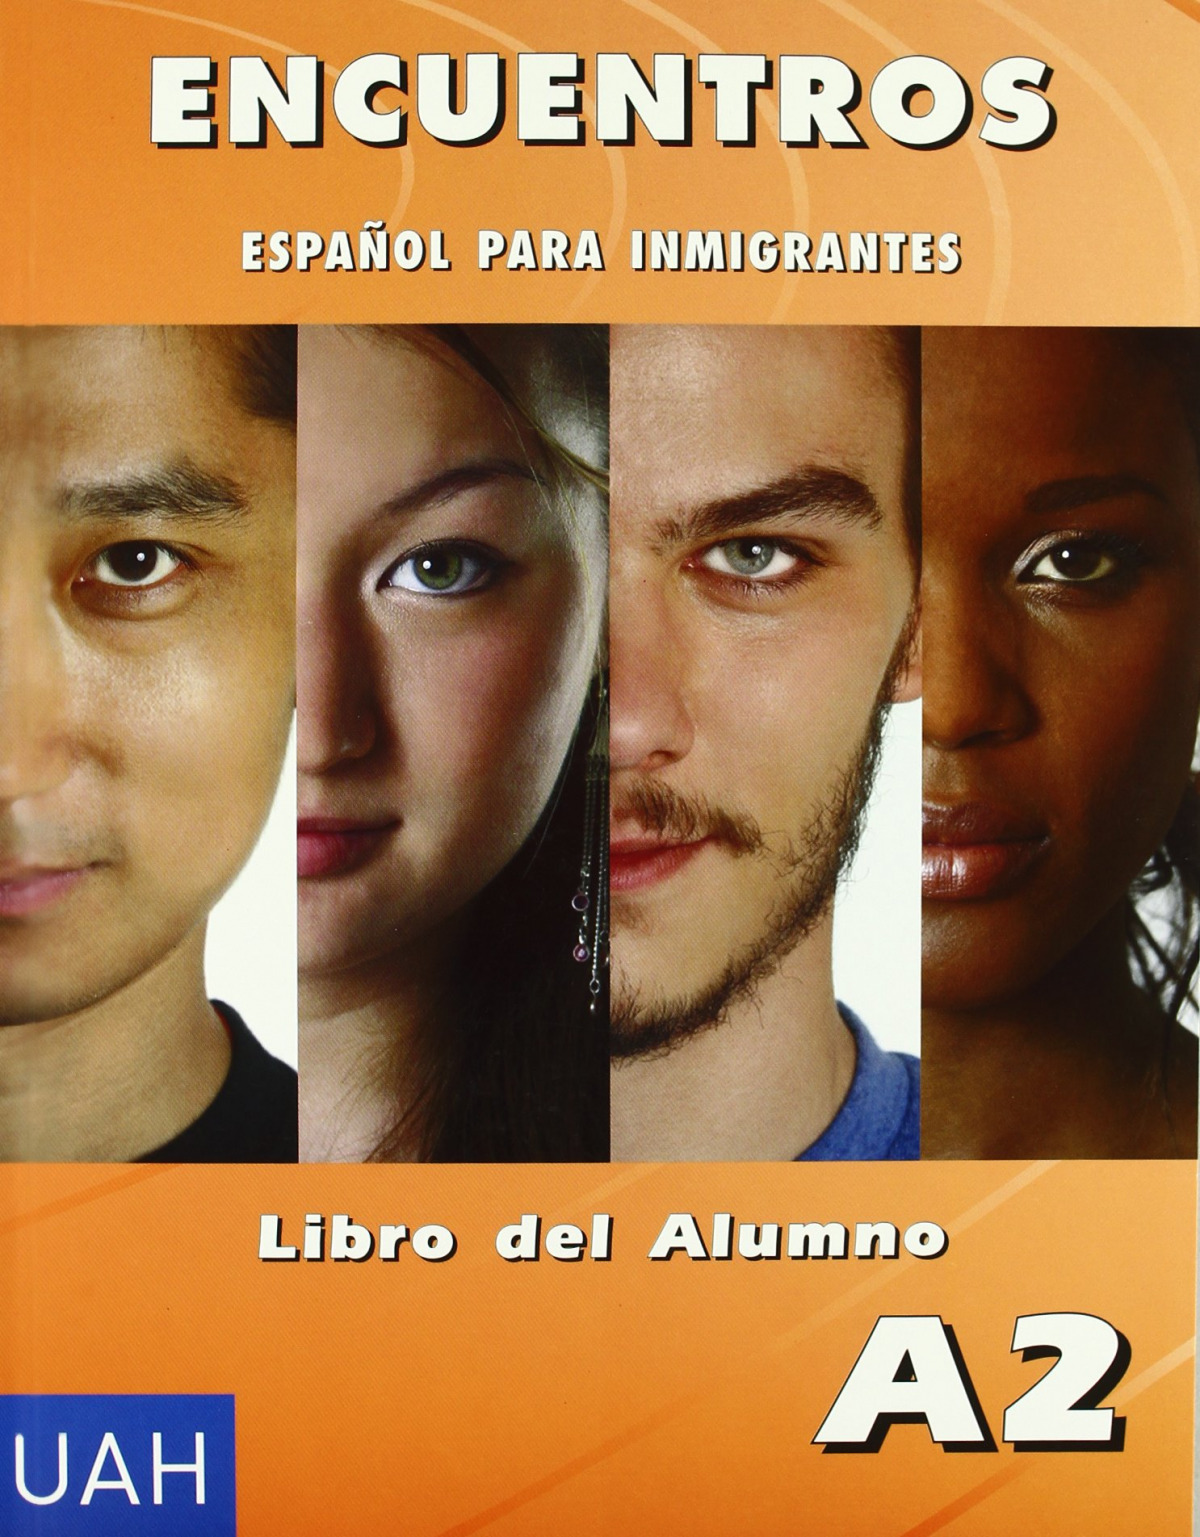 Libro alumno encuentros espaÑol para inmigrantes a2 - Varios